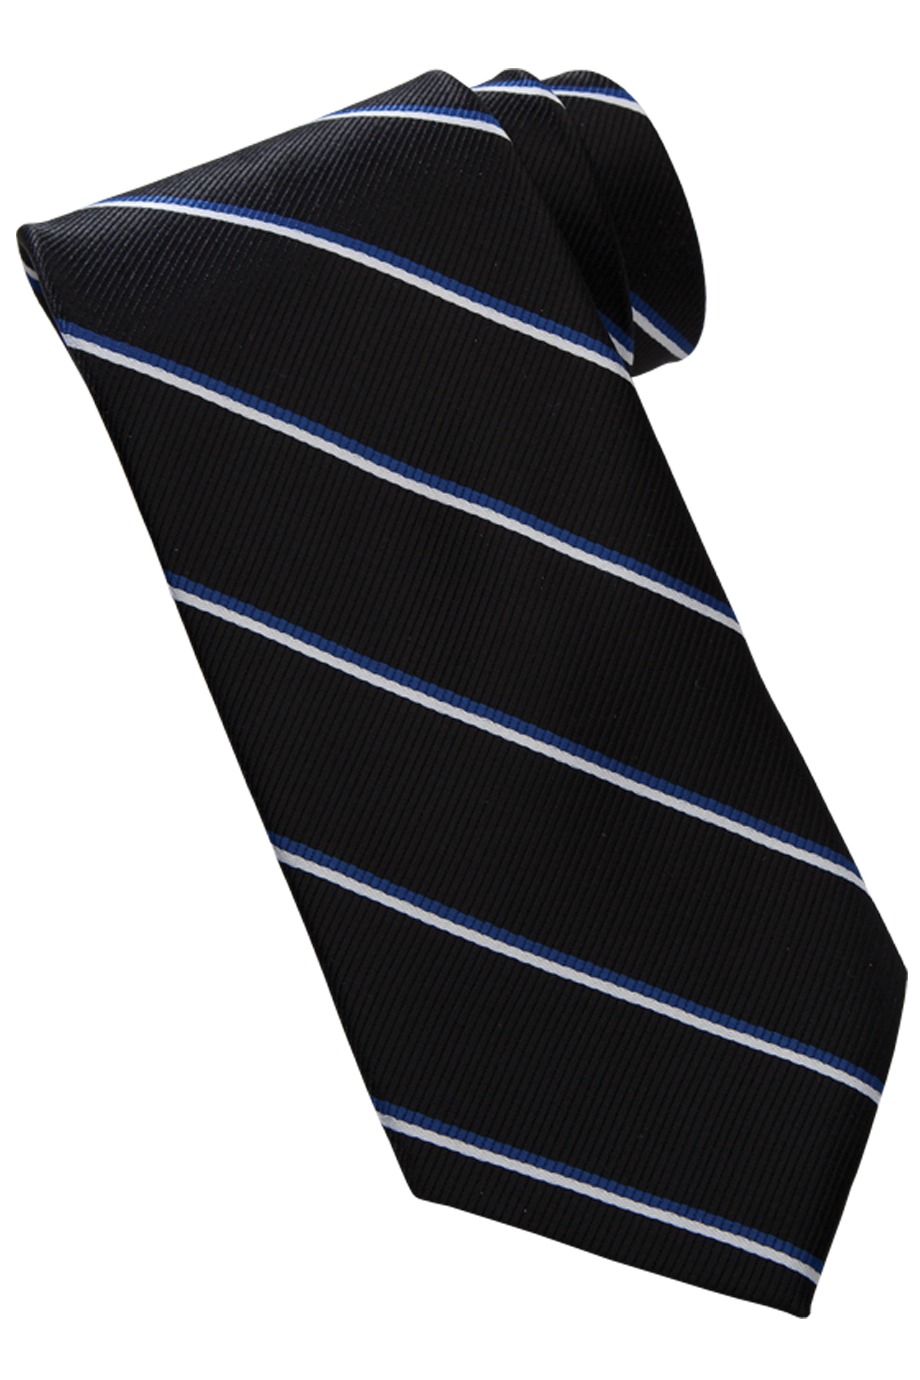 Edwards Garment RP00 - Narrow Stripe Tie